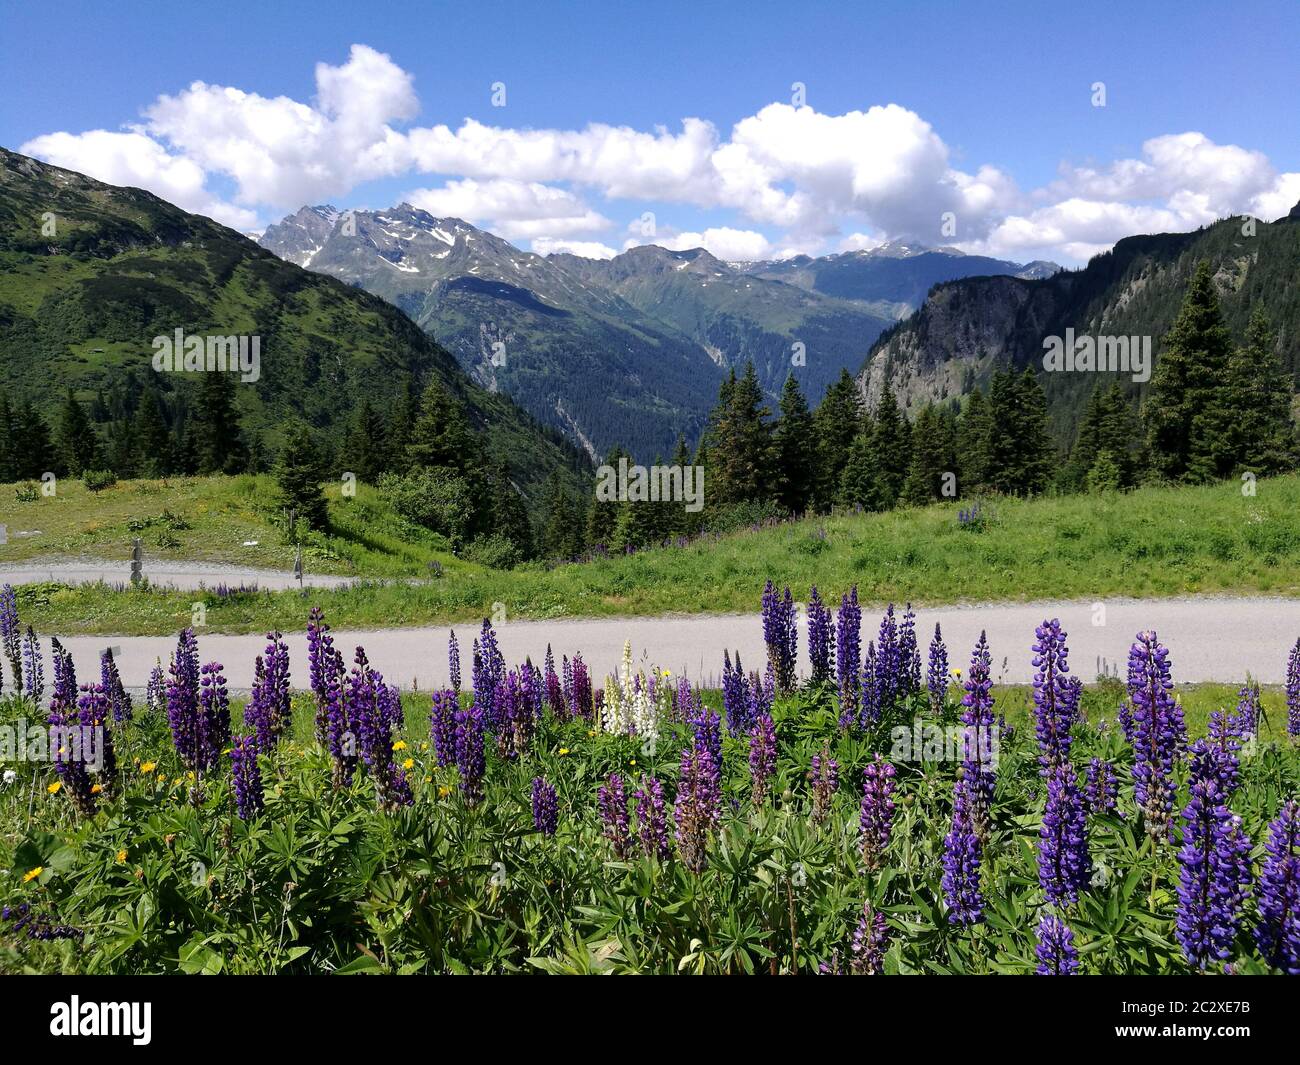 auf dem Bild sieht man im Vordergrund blaue und weiße Lupinen und im Hintergrund die österreichischen Alpen im Bundesland Vorarlberg, es ist ein sonni Stock Photo